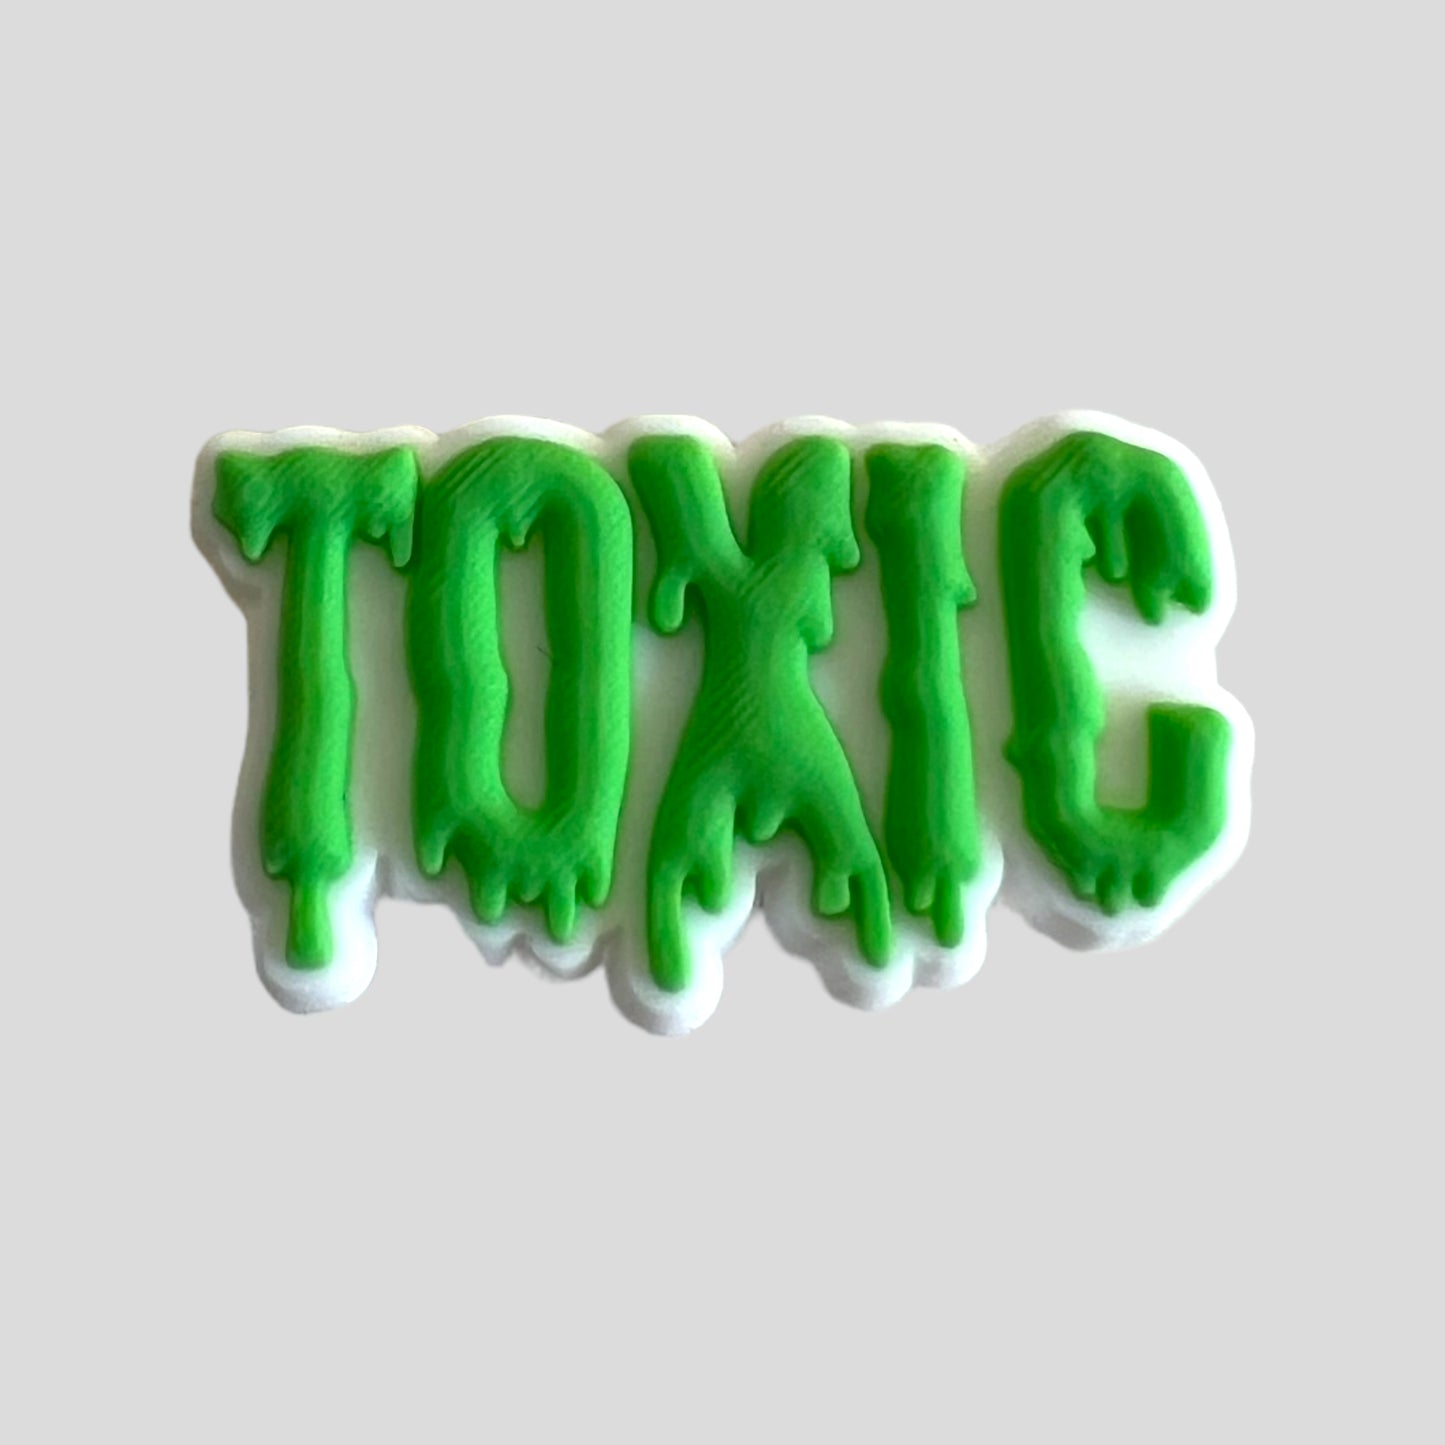 Toxic | Quotes